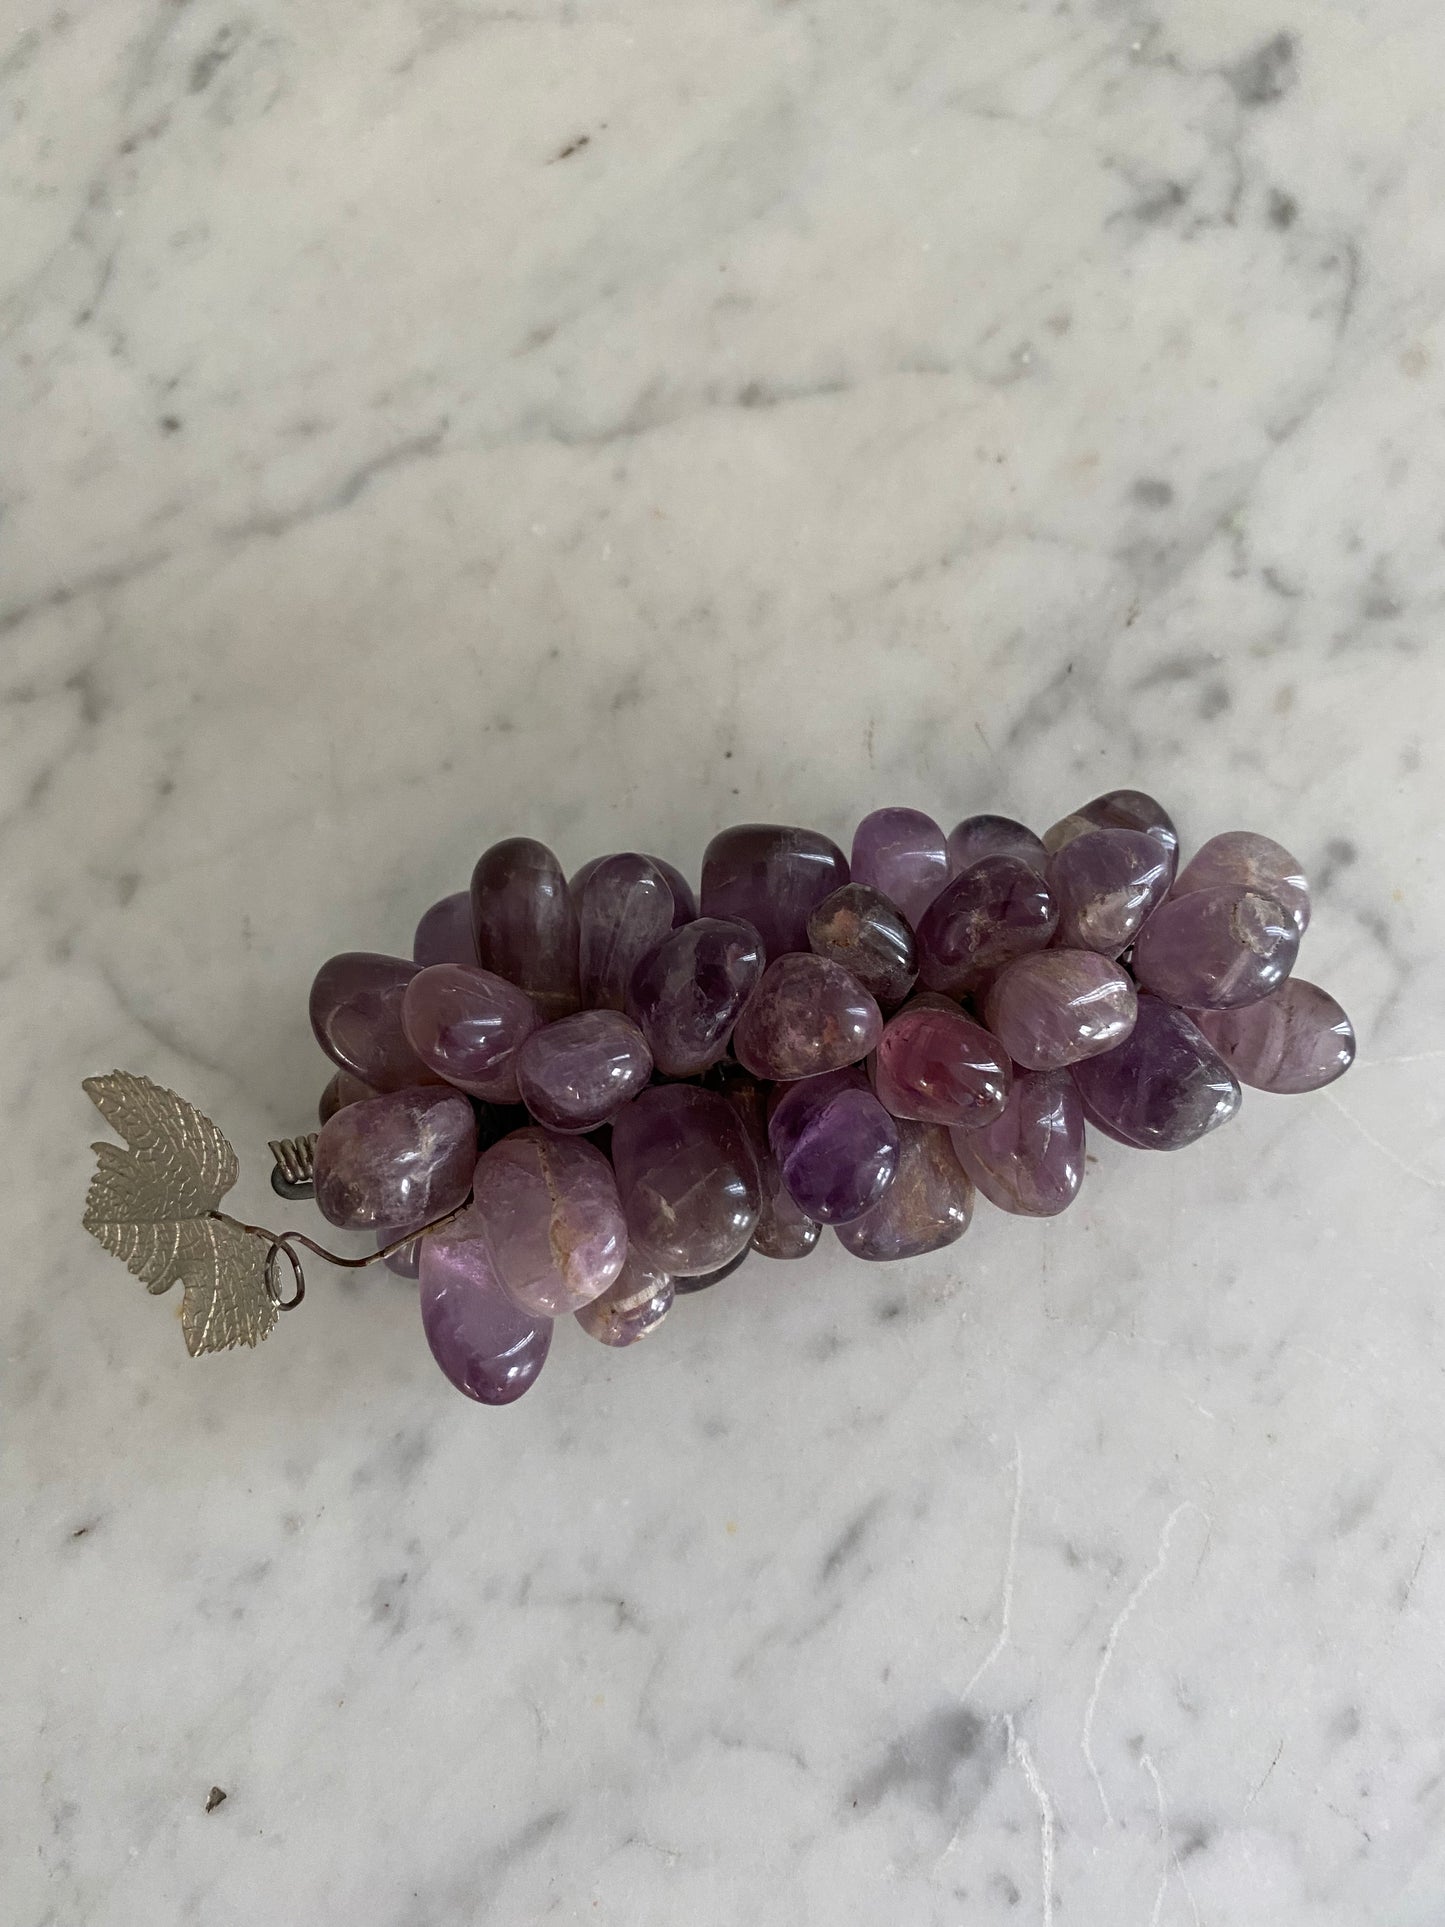 Decorative vintage grapes